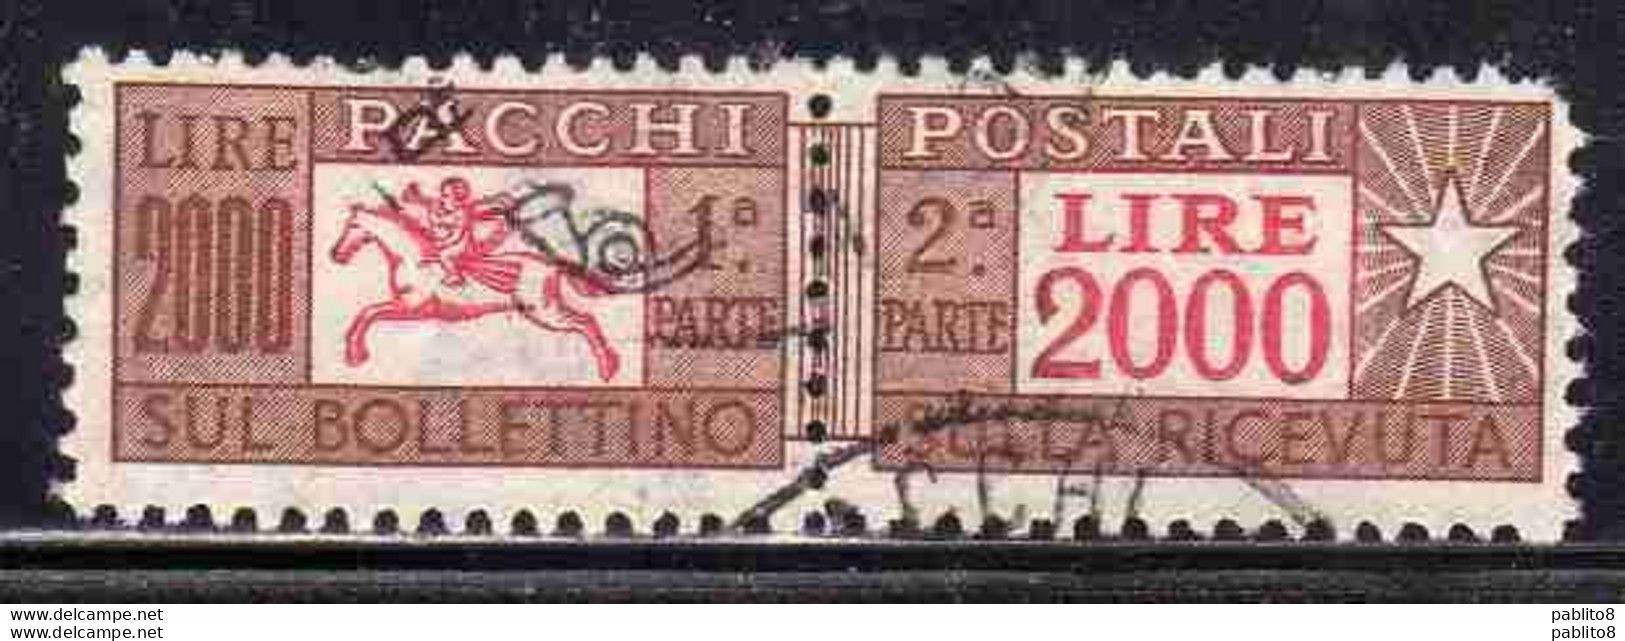 ITALIA REPUBBLICA ITALY REPUBLIC 1955 1979 PACCHI POSTALI PARCEL POST STELLE STARS LIRE 2000 USATO USED OBLITERE' - Paketmarken